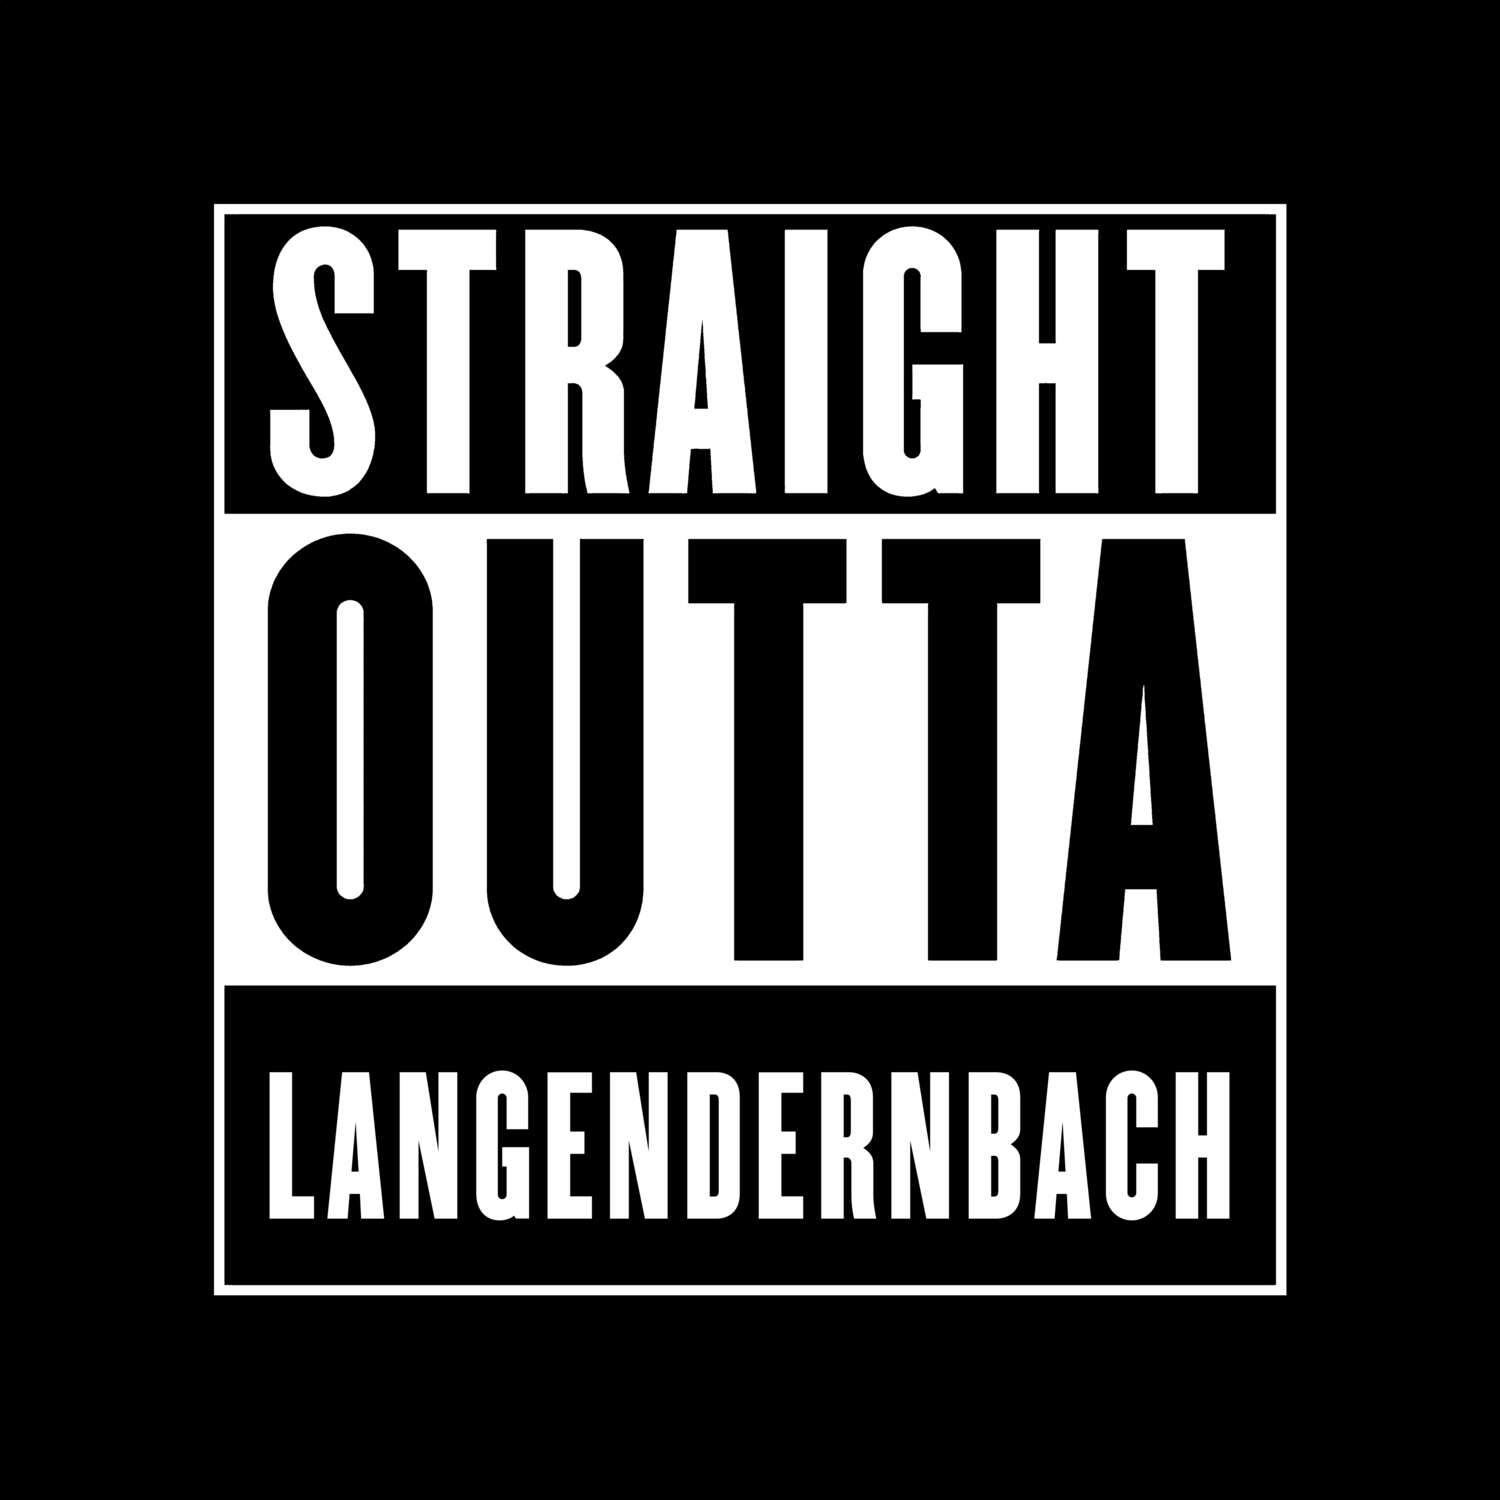 Langendernbach T-Shirt »Straight Outta«